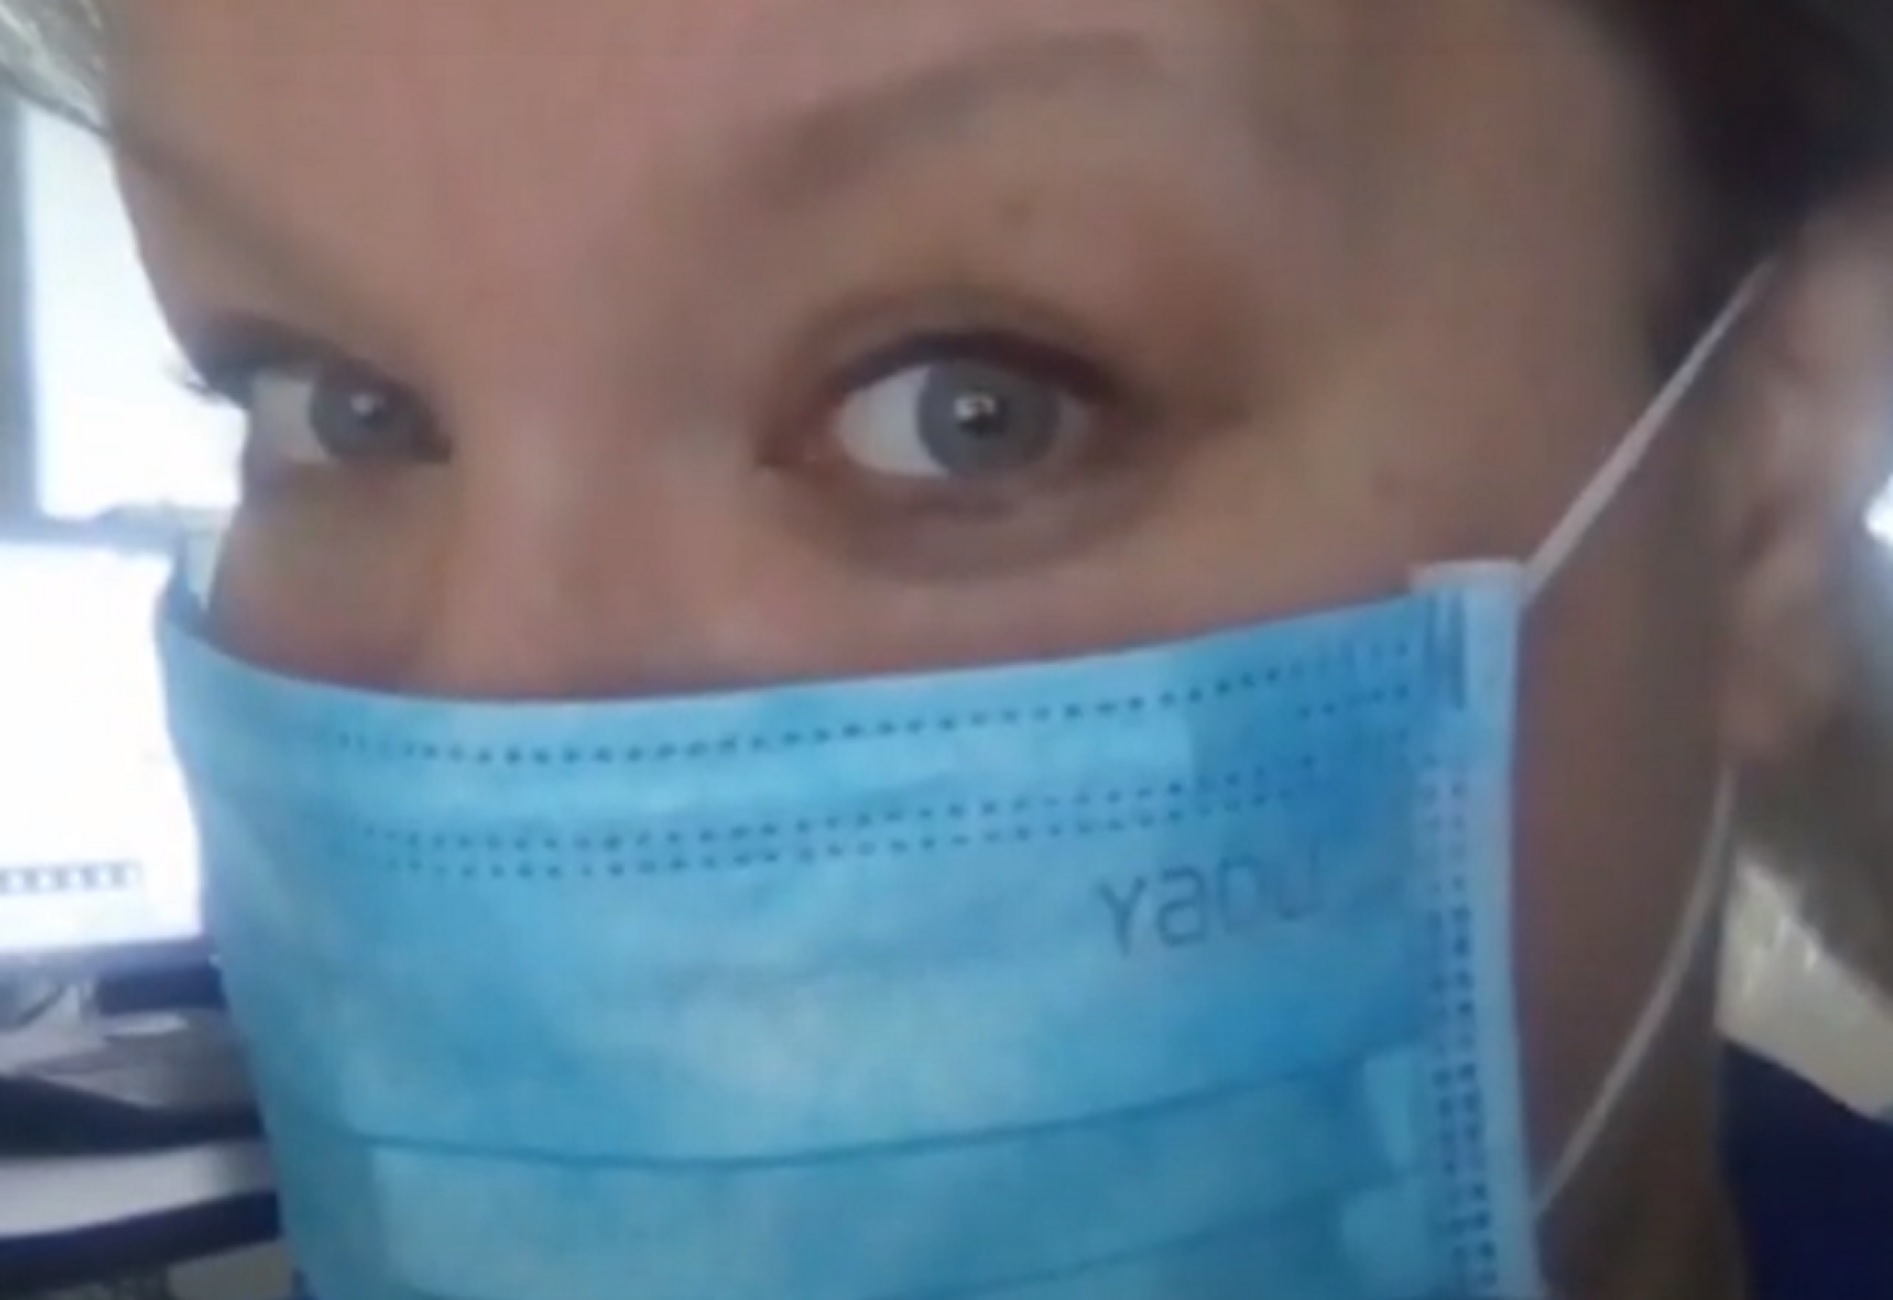 Νάουσα – Κορονοϊός: Νέα στοιχεία για τον θάνατο 37χρονης νοσηλεύτριας! Ραγίζουν καρδιές η μητέρα και ο αρραβωνιαστικός της (Βίντεο)